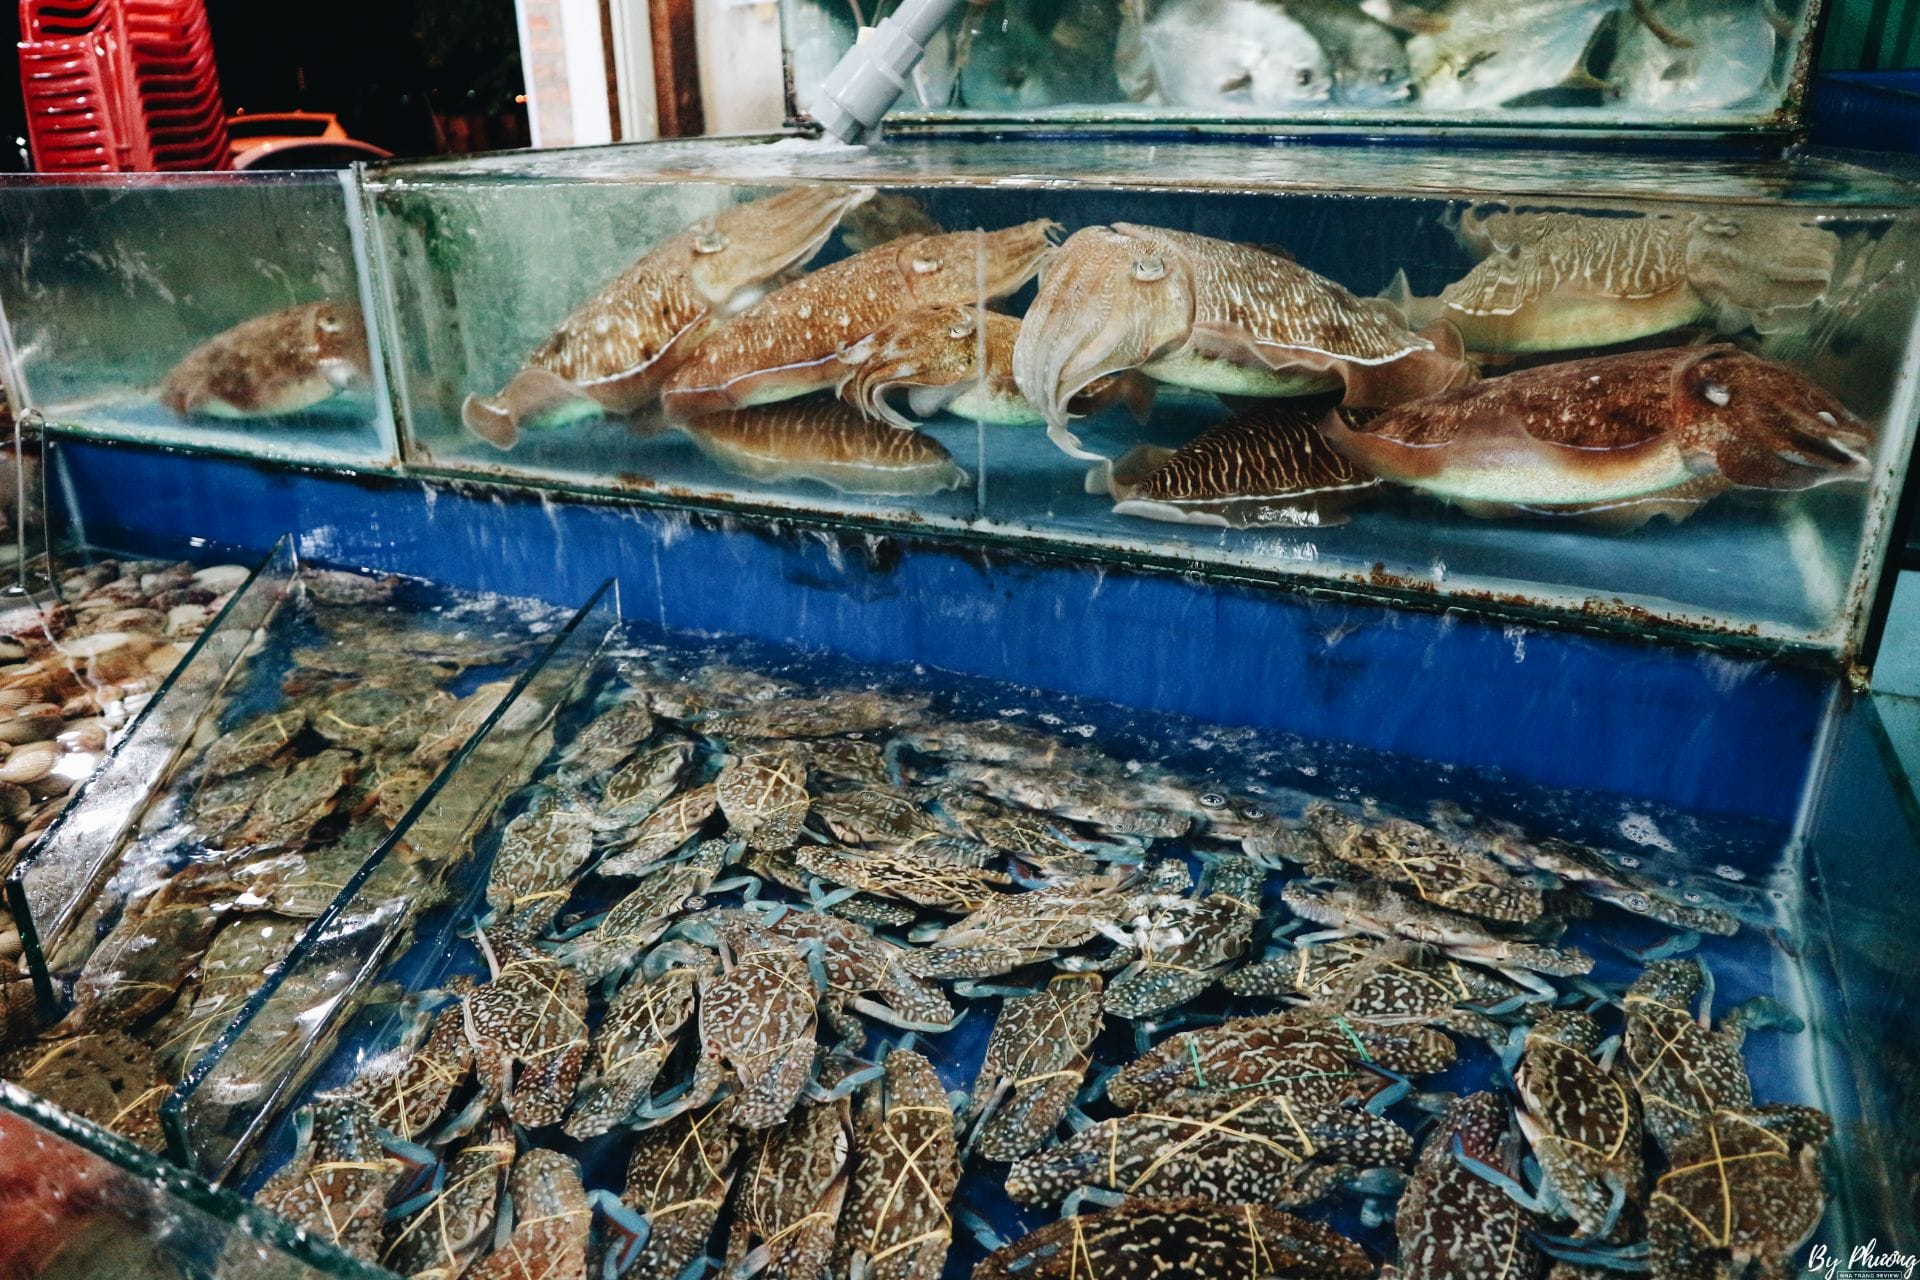 Quán Ăn Hải Sản Rẻ Ở Nha Trang